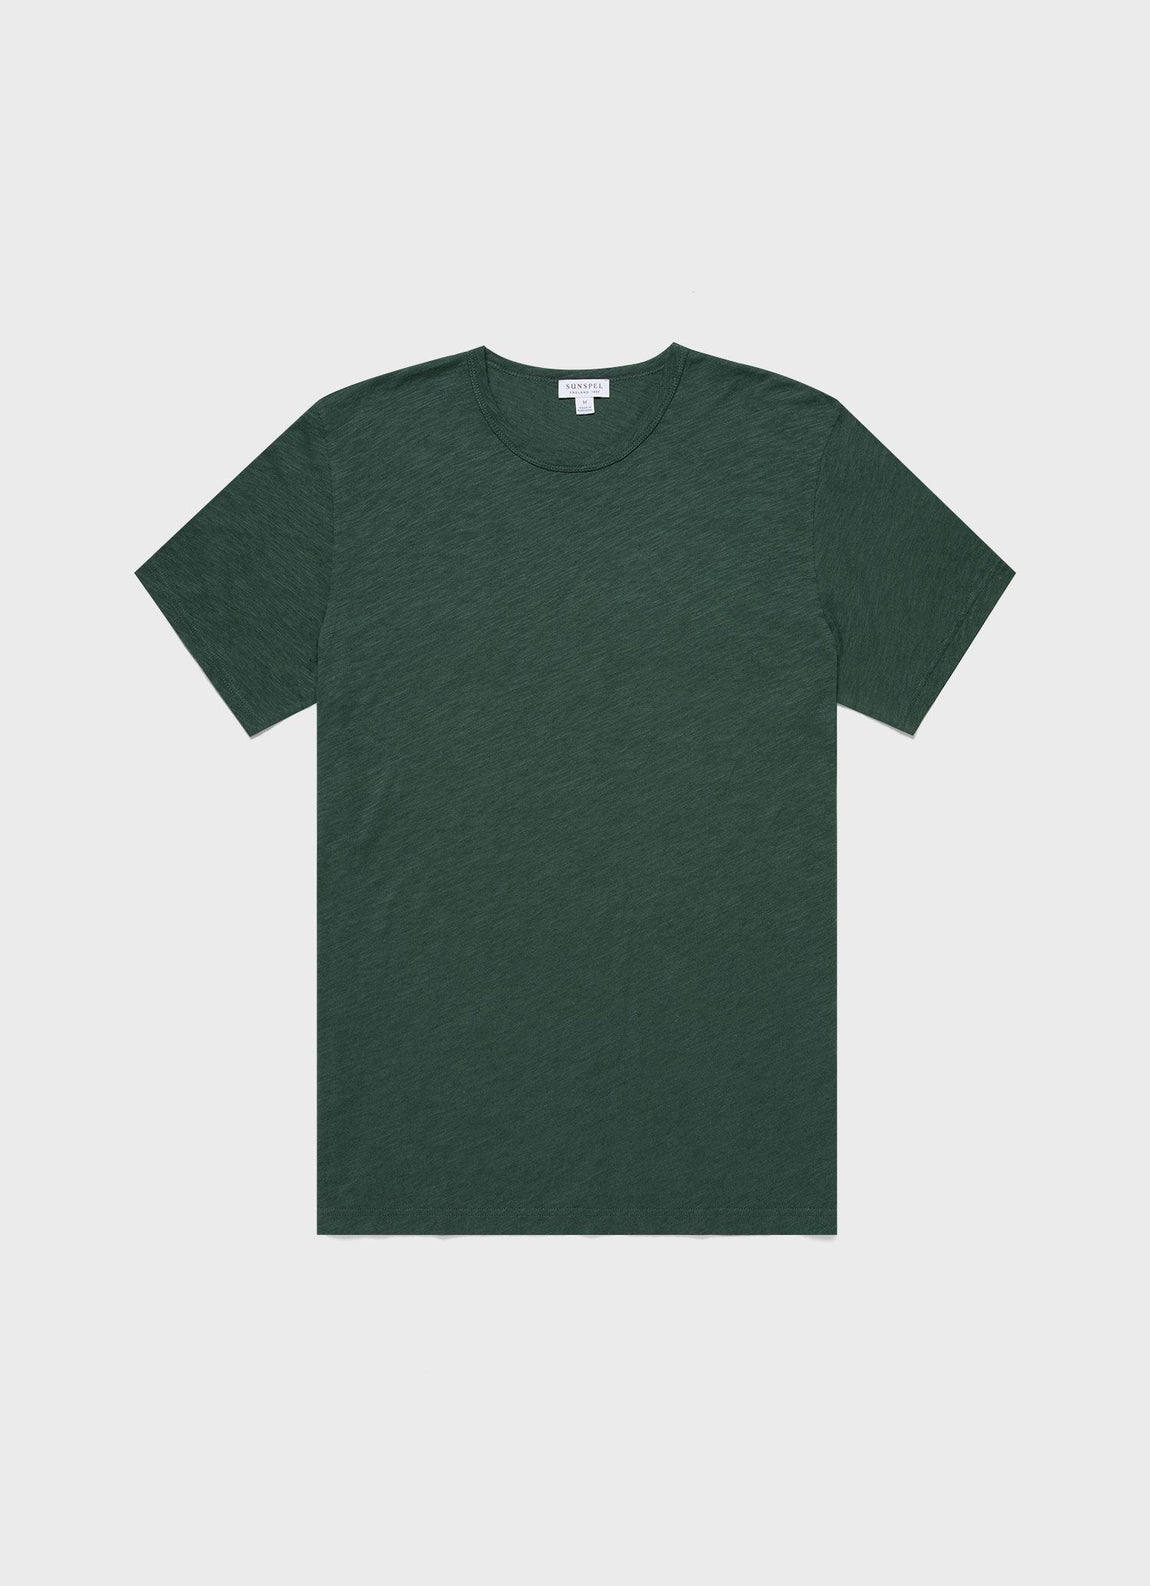 Men's Cotton Linen T-shirt in Deep Green